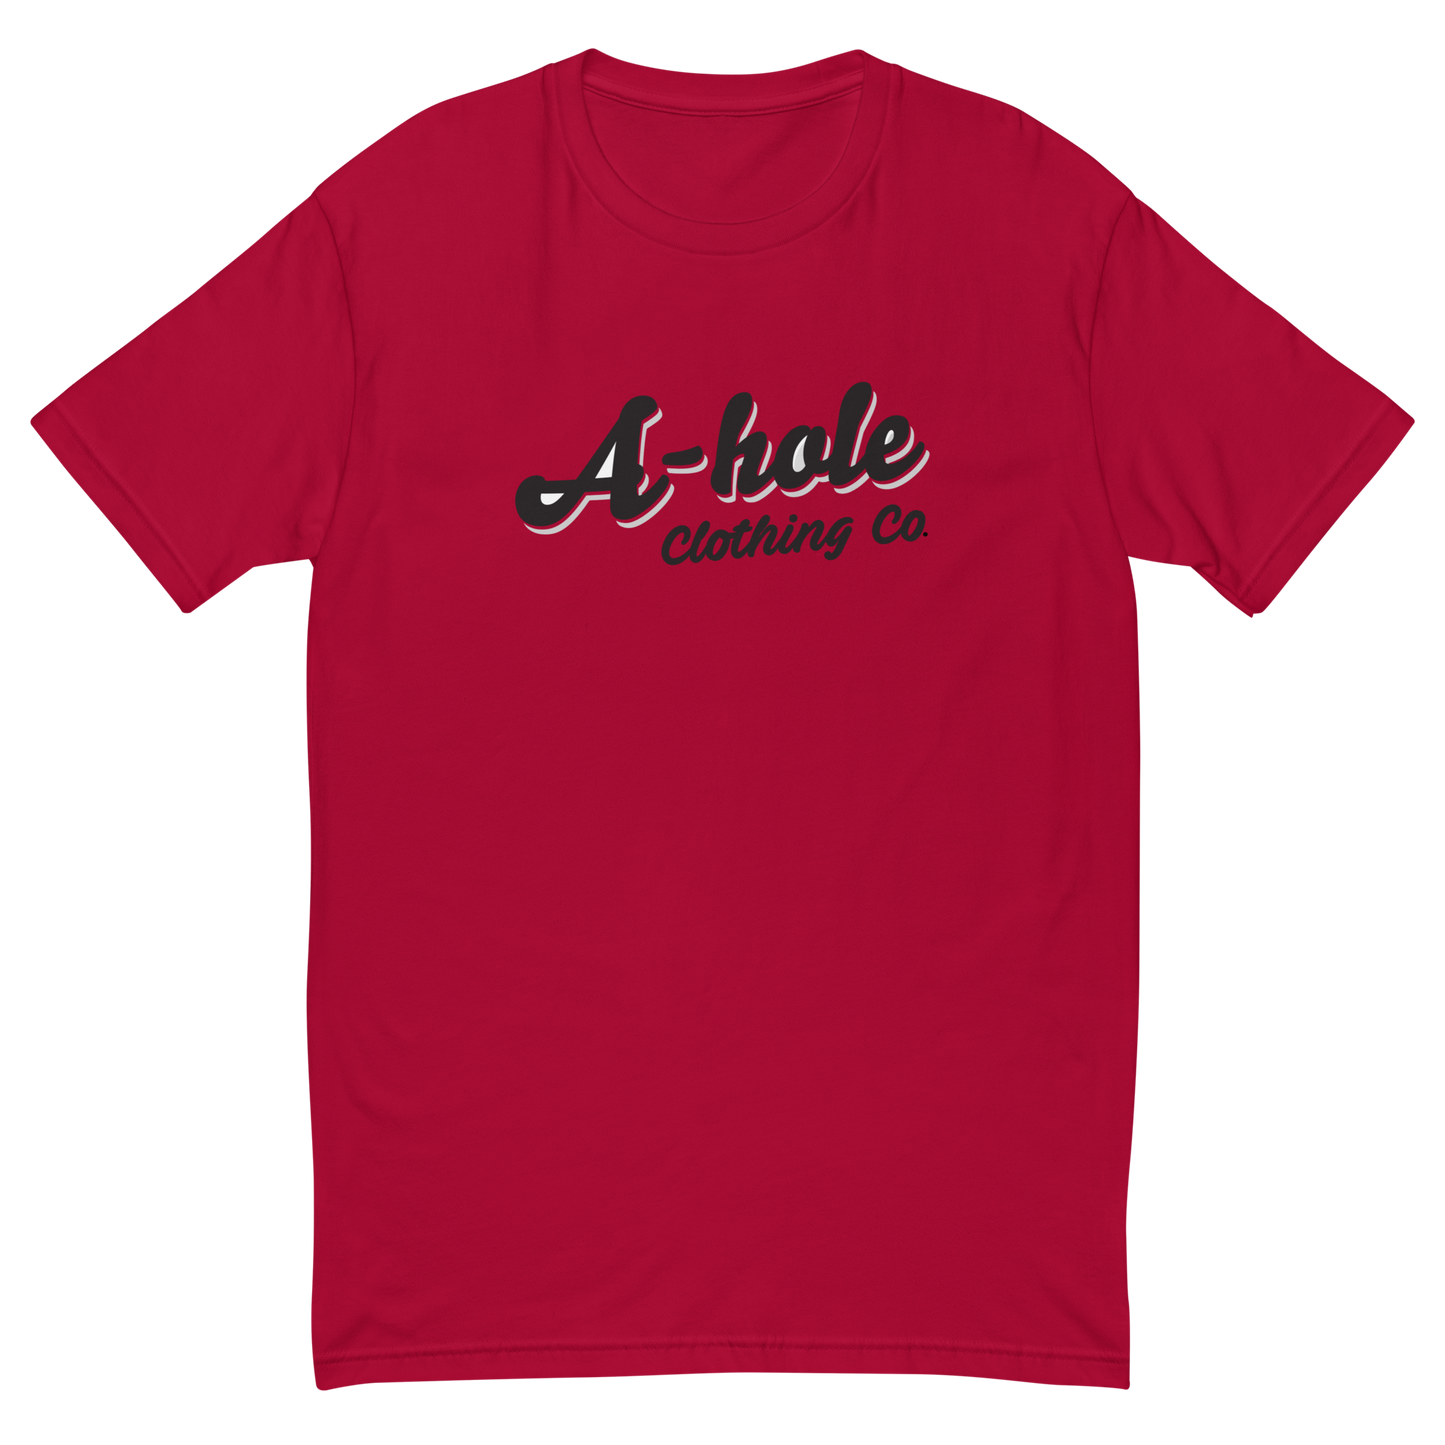 Men's A-Hole Logo Short Sleeve T-shirt